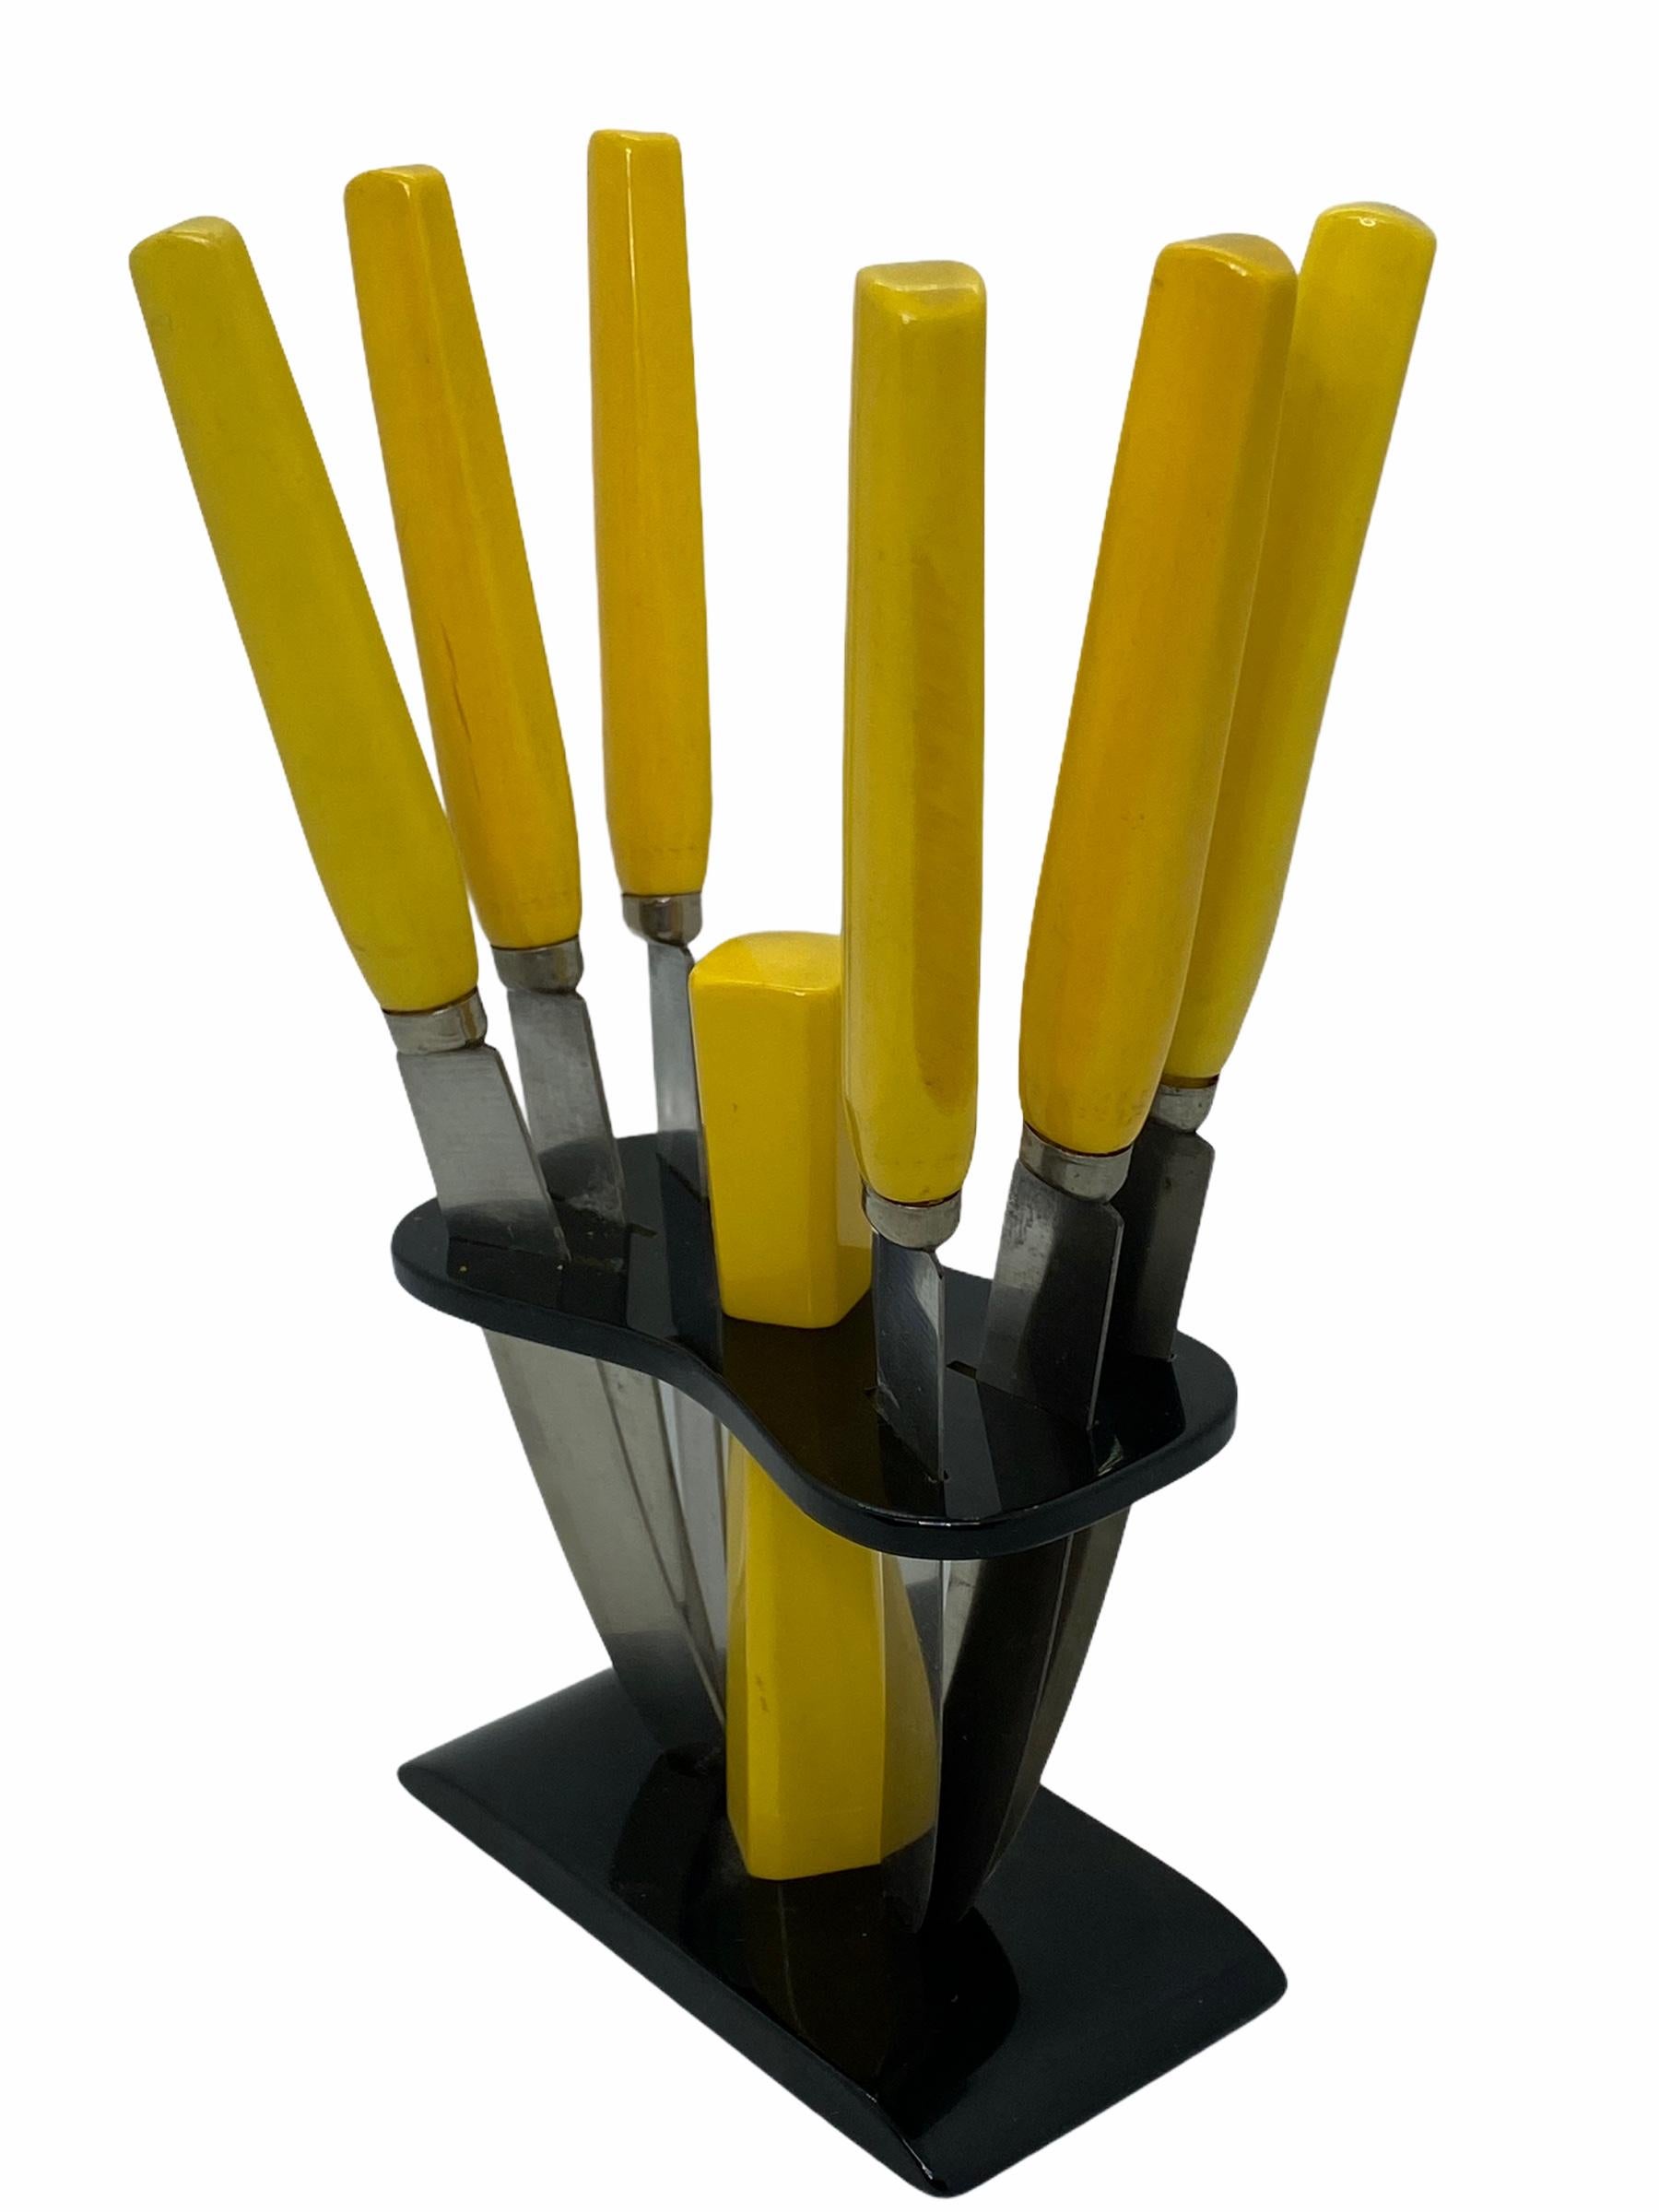 Art Deco Bakelit Obstmesserset aus den 1930er Jahren. Hergestellt in Deutschland. Die Messer mit gelbem Bakelit-Griff sind in einem Bakelit-Ständer untergebracht, der sich hervorragend zur Schau stellen lässt. Ausgezeichneter Zustand. 1930's.
 